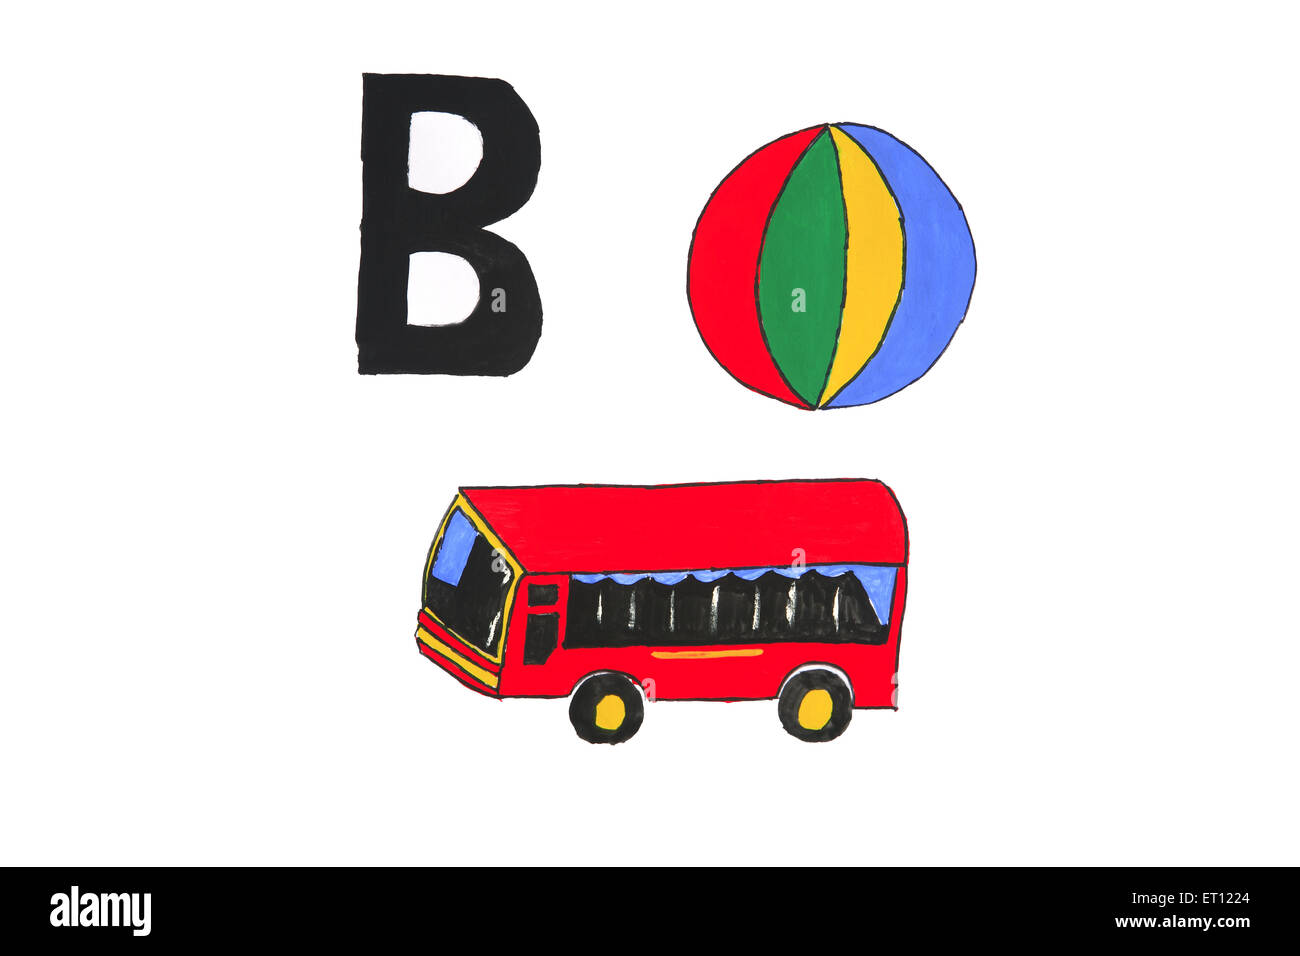 b pour le ballon, b pour le bus Banque D'Images